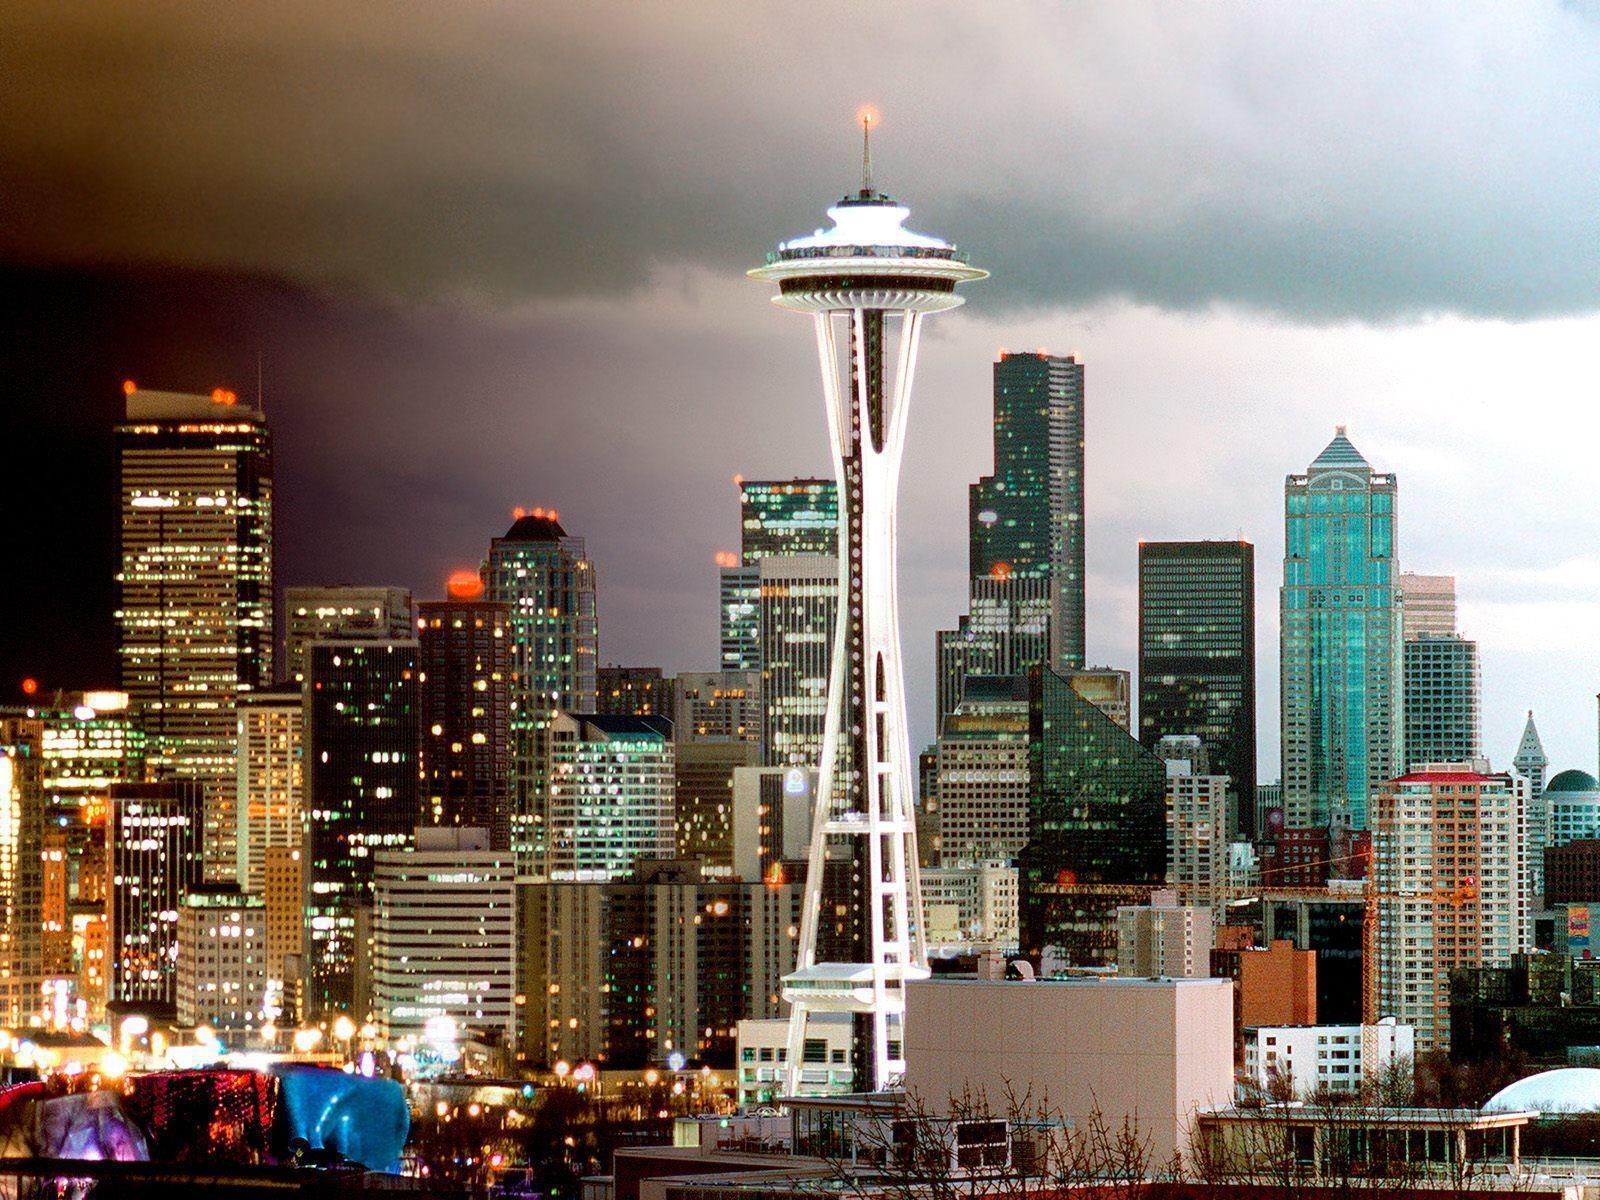 Seattle, WA.Beautiful City.My Husband was born in Puallup, WA